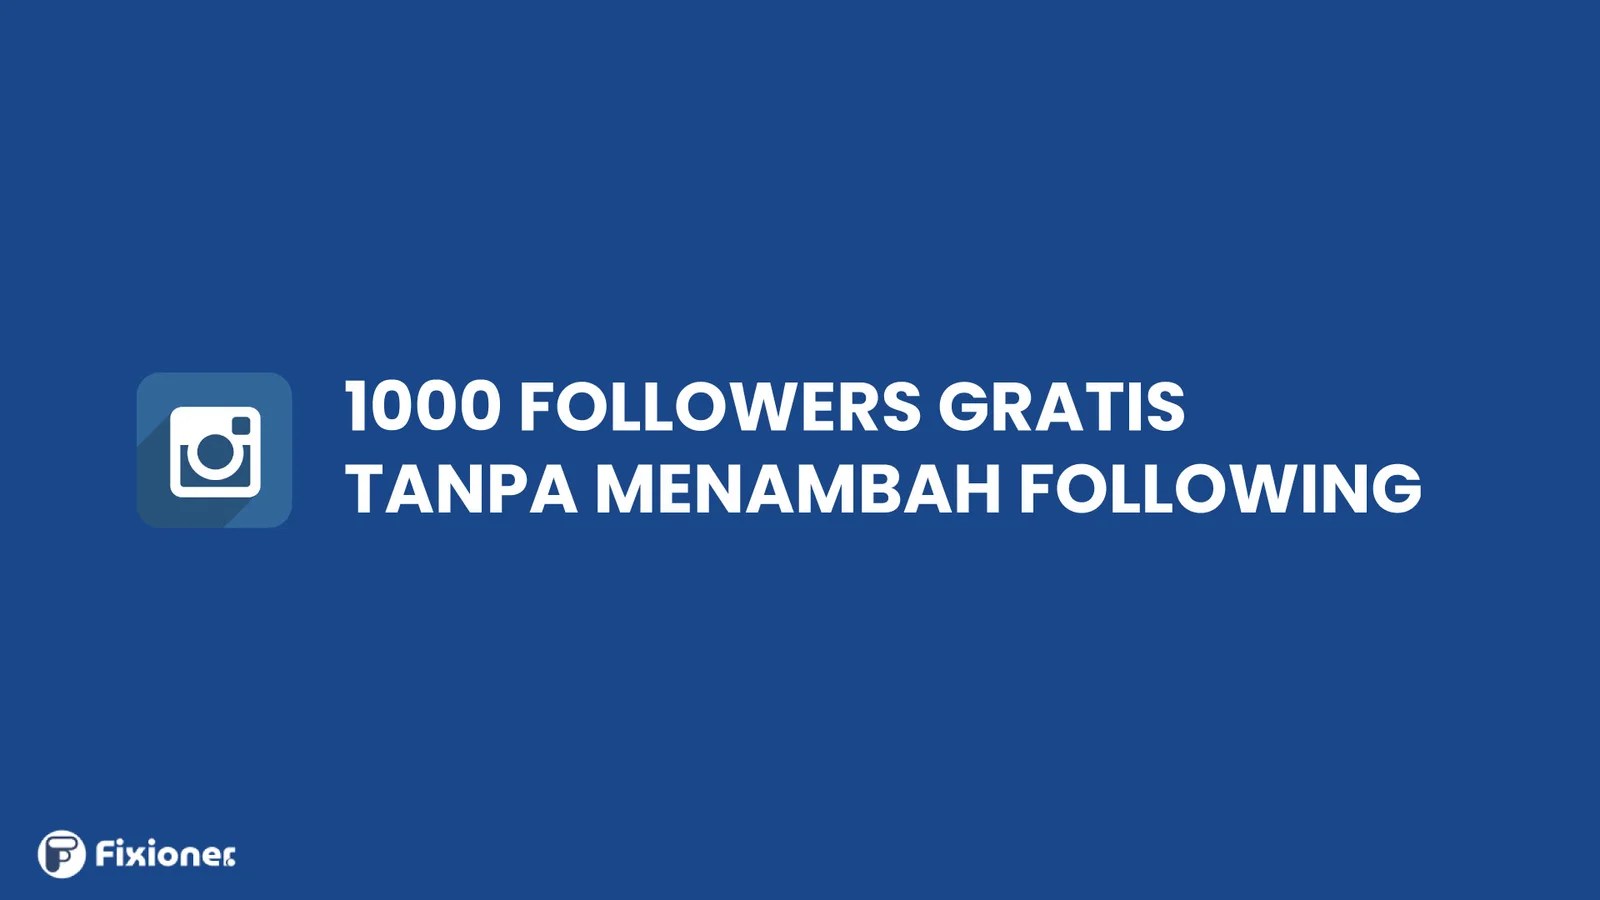 Cara Mendapatkan 1000 Followers Instagram. Cara Mendapatkan 1000 Followers Gratis Tanpa Menambah